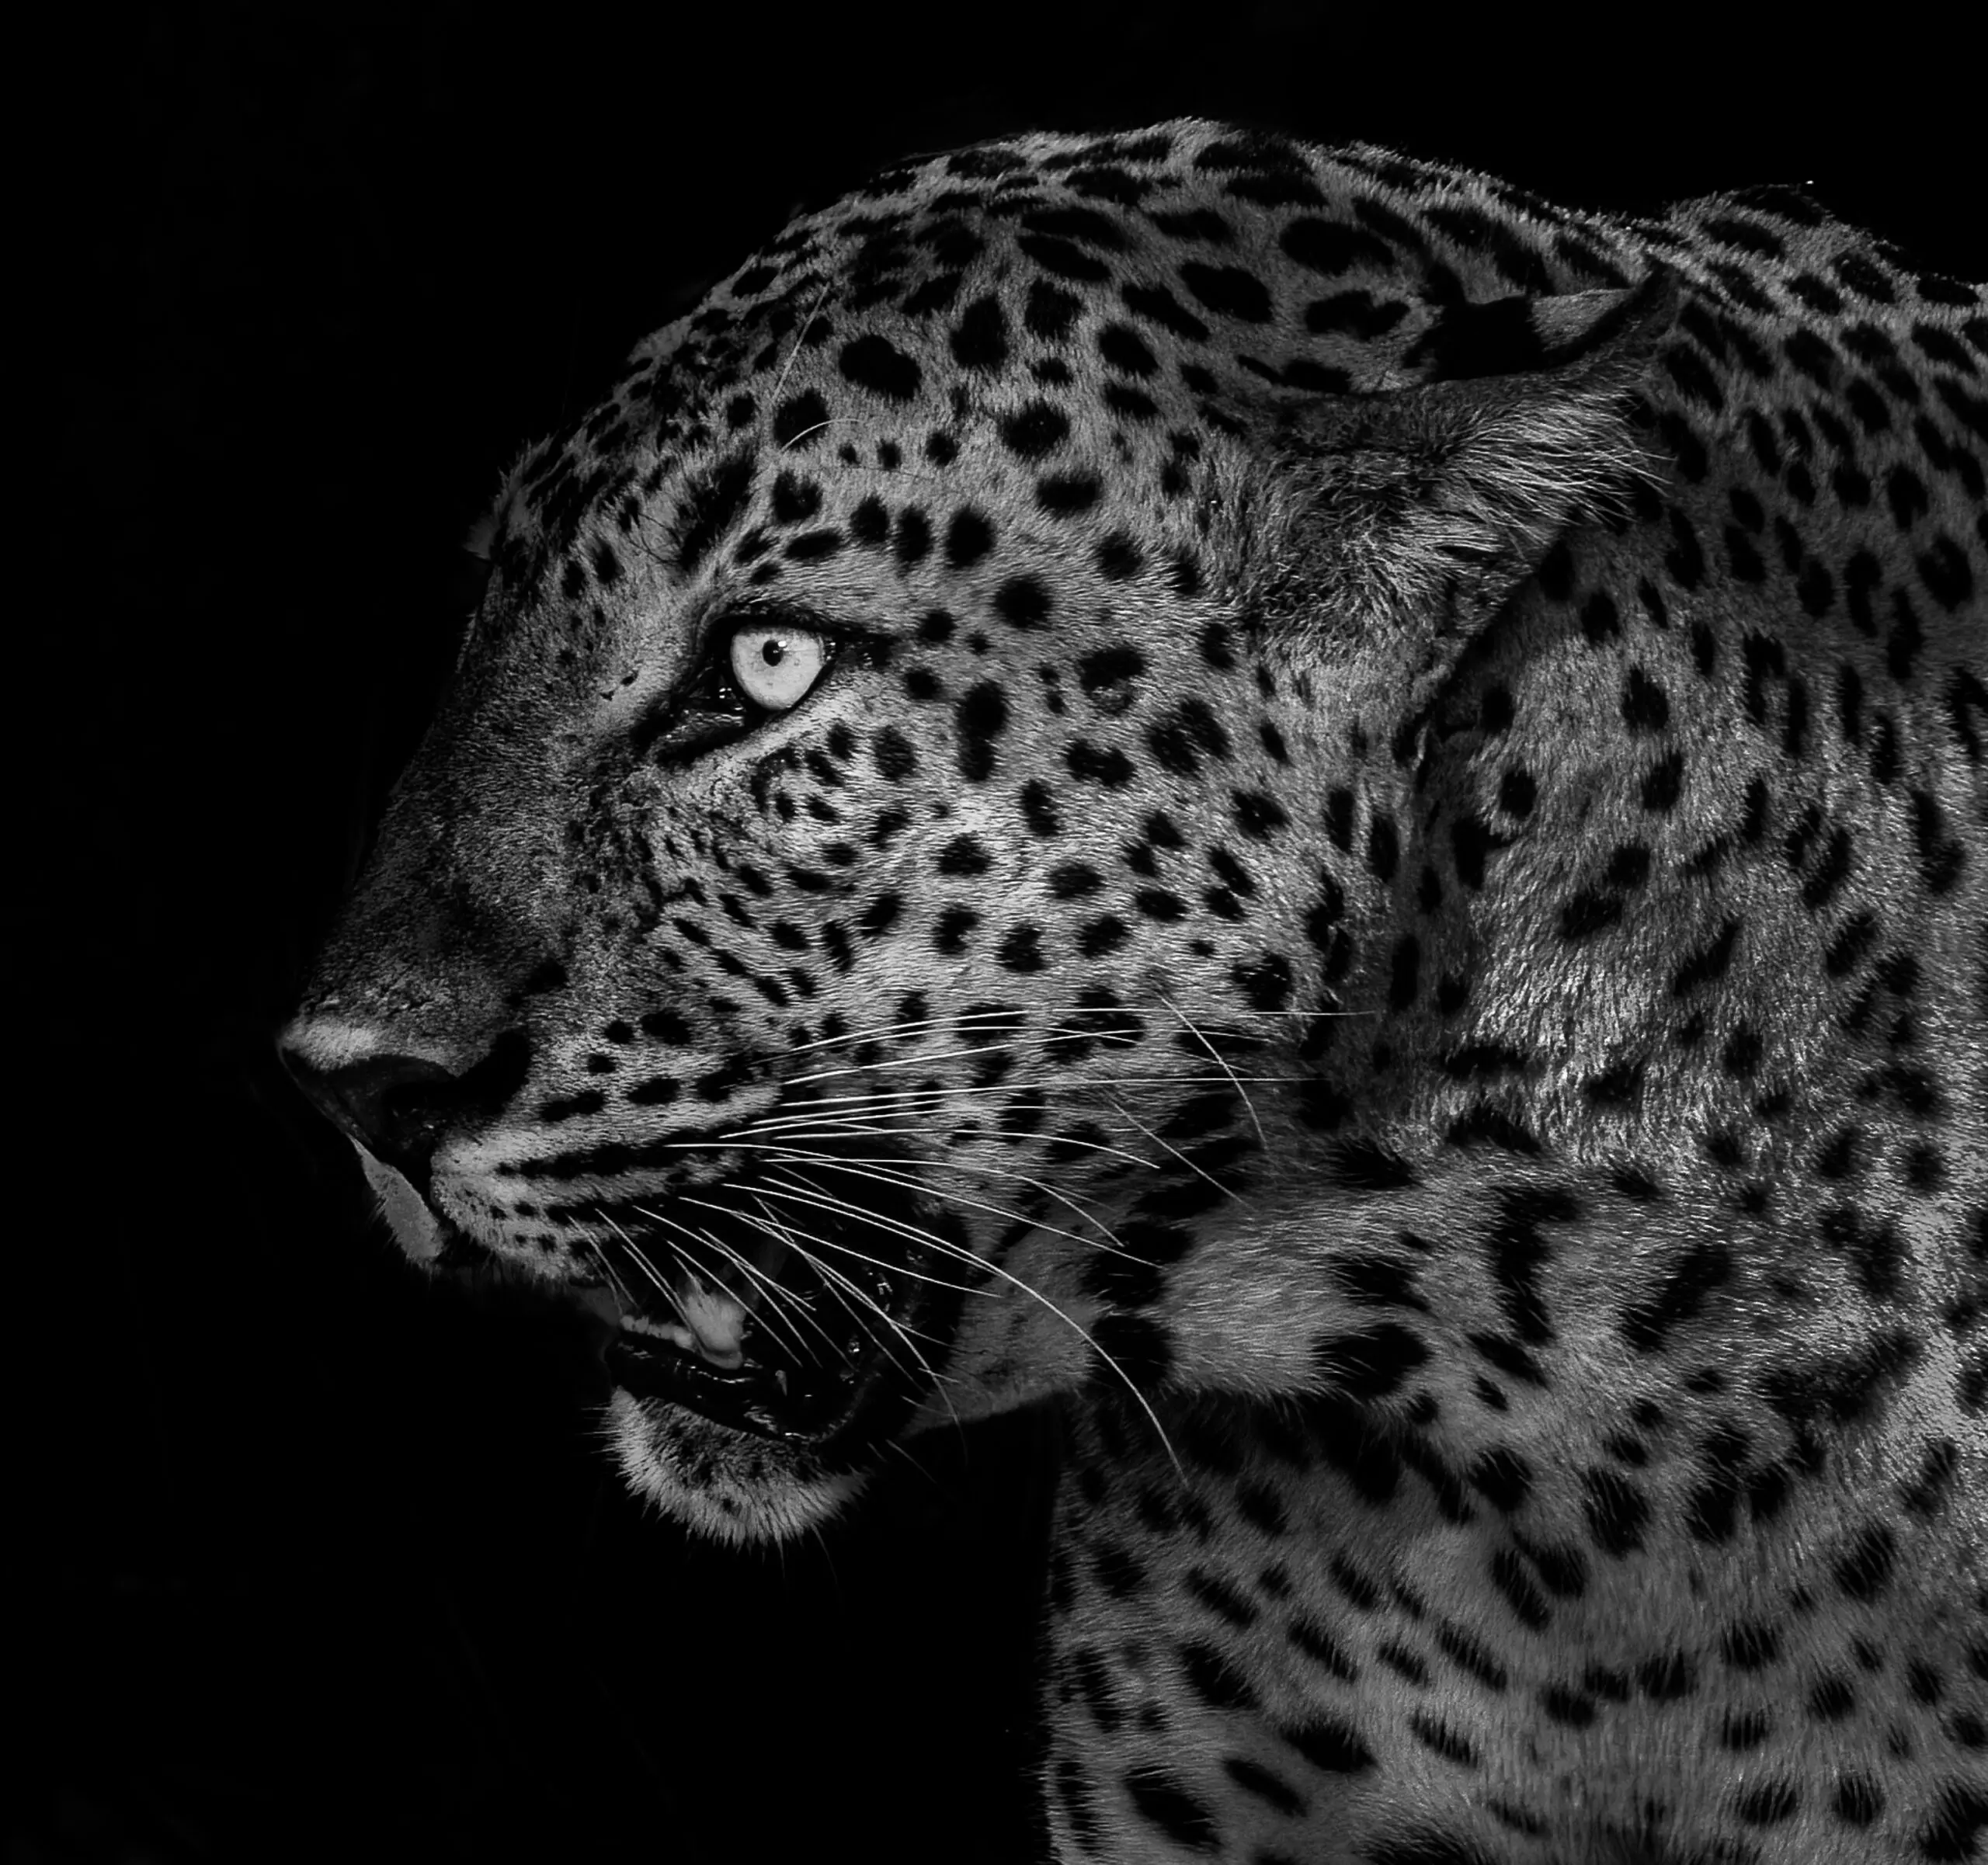 Wandbild (6342) Untitled by Liwen Tao,1x.com präsentiert: Tiere,Natur,Wildtiere,Aus Afrika